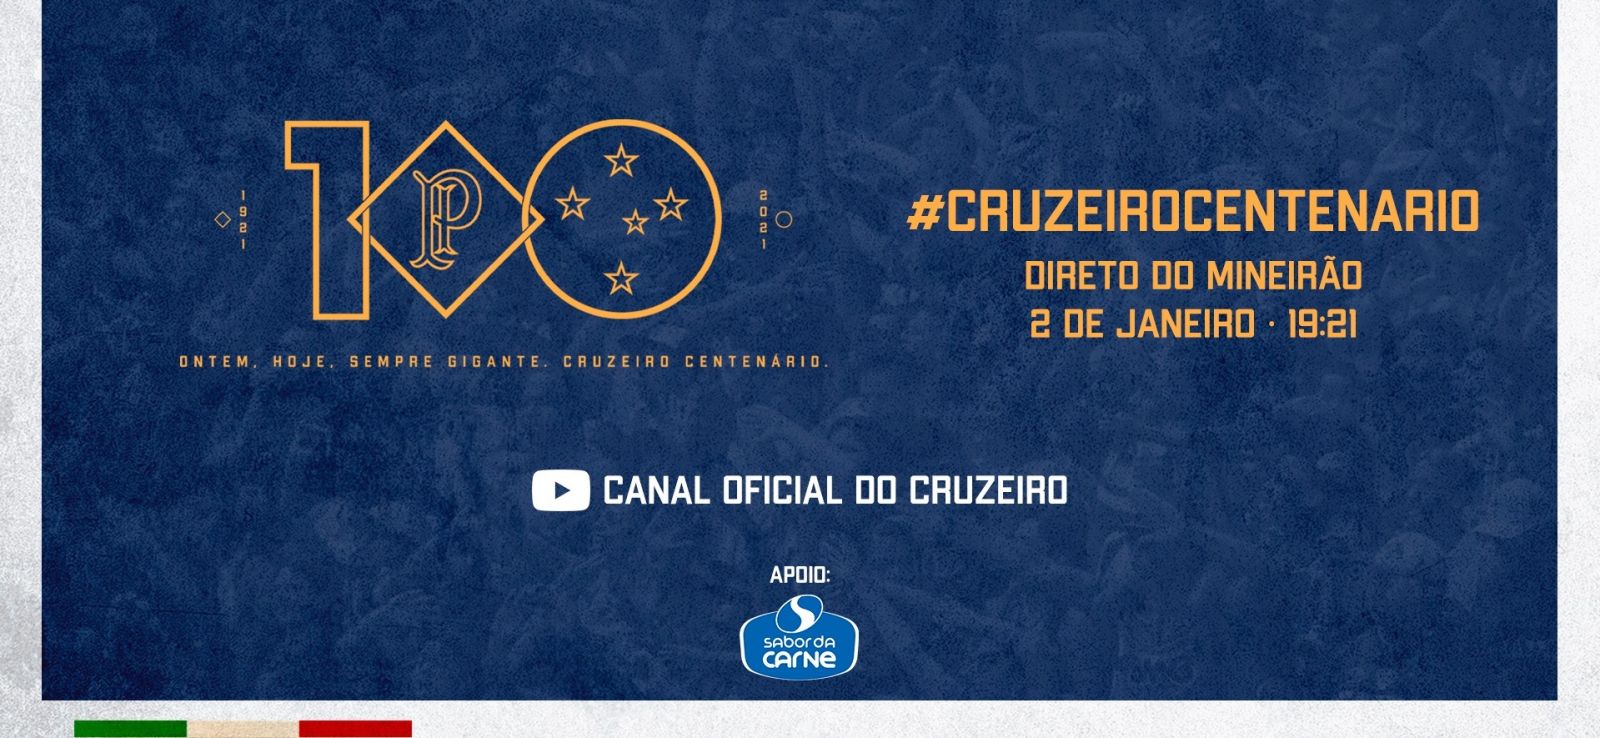 Cruzeiro Esporte Clube comemora seu Centenário no dia 2 de janeiro, com transmissão especial diretamente do Mineirão